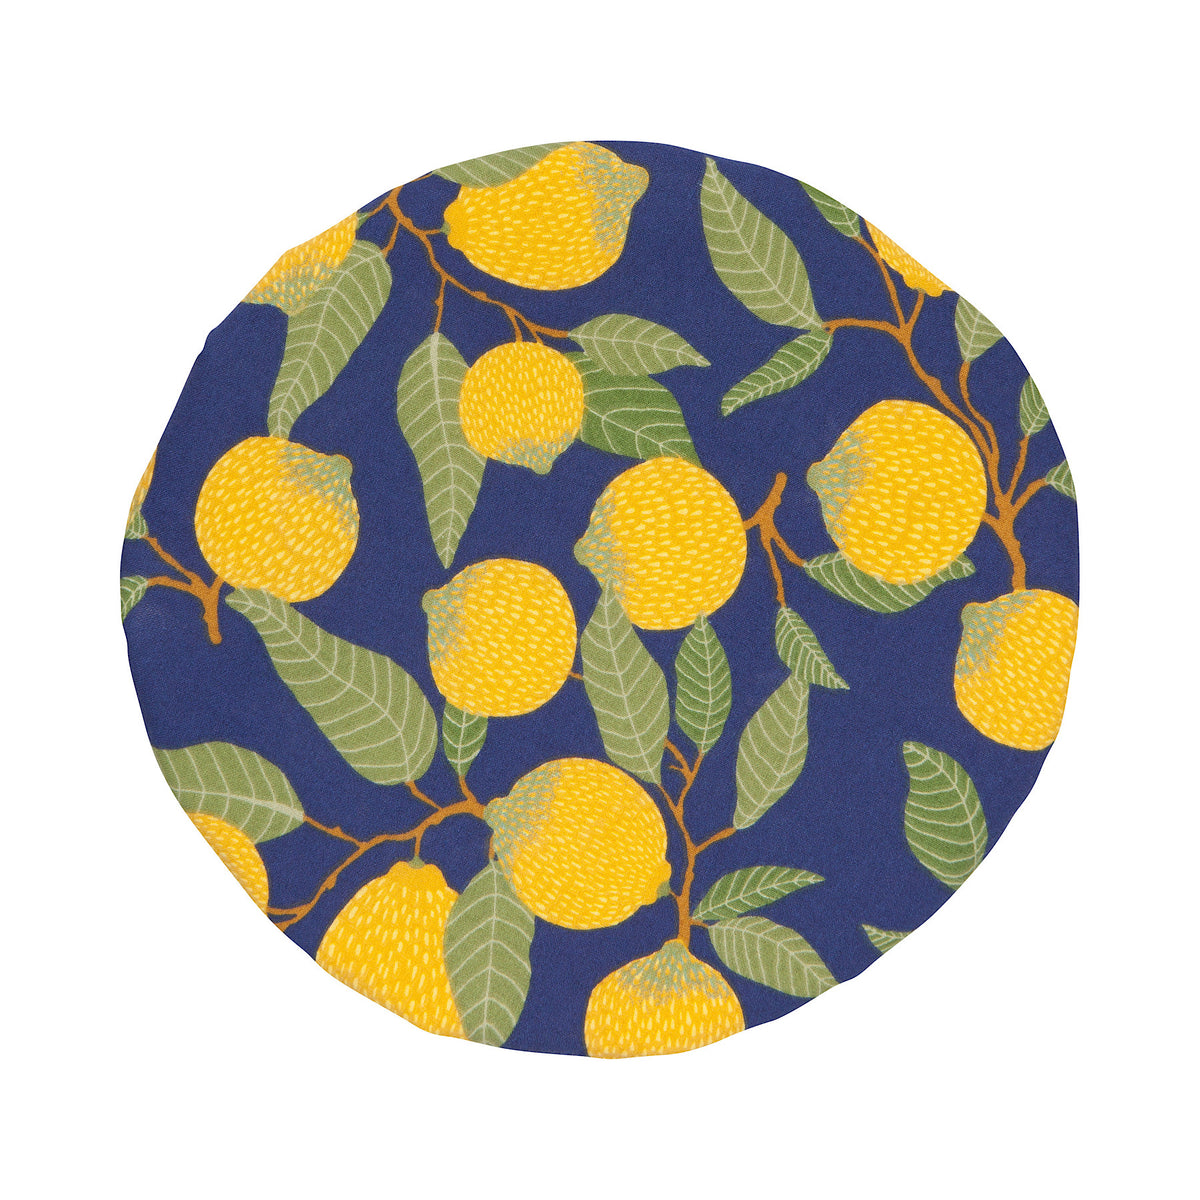 Lemons Bowl Cover, Set of 2